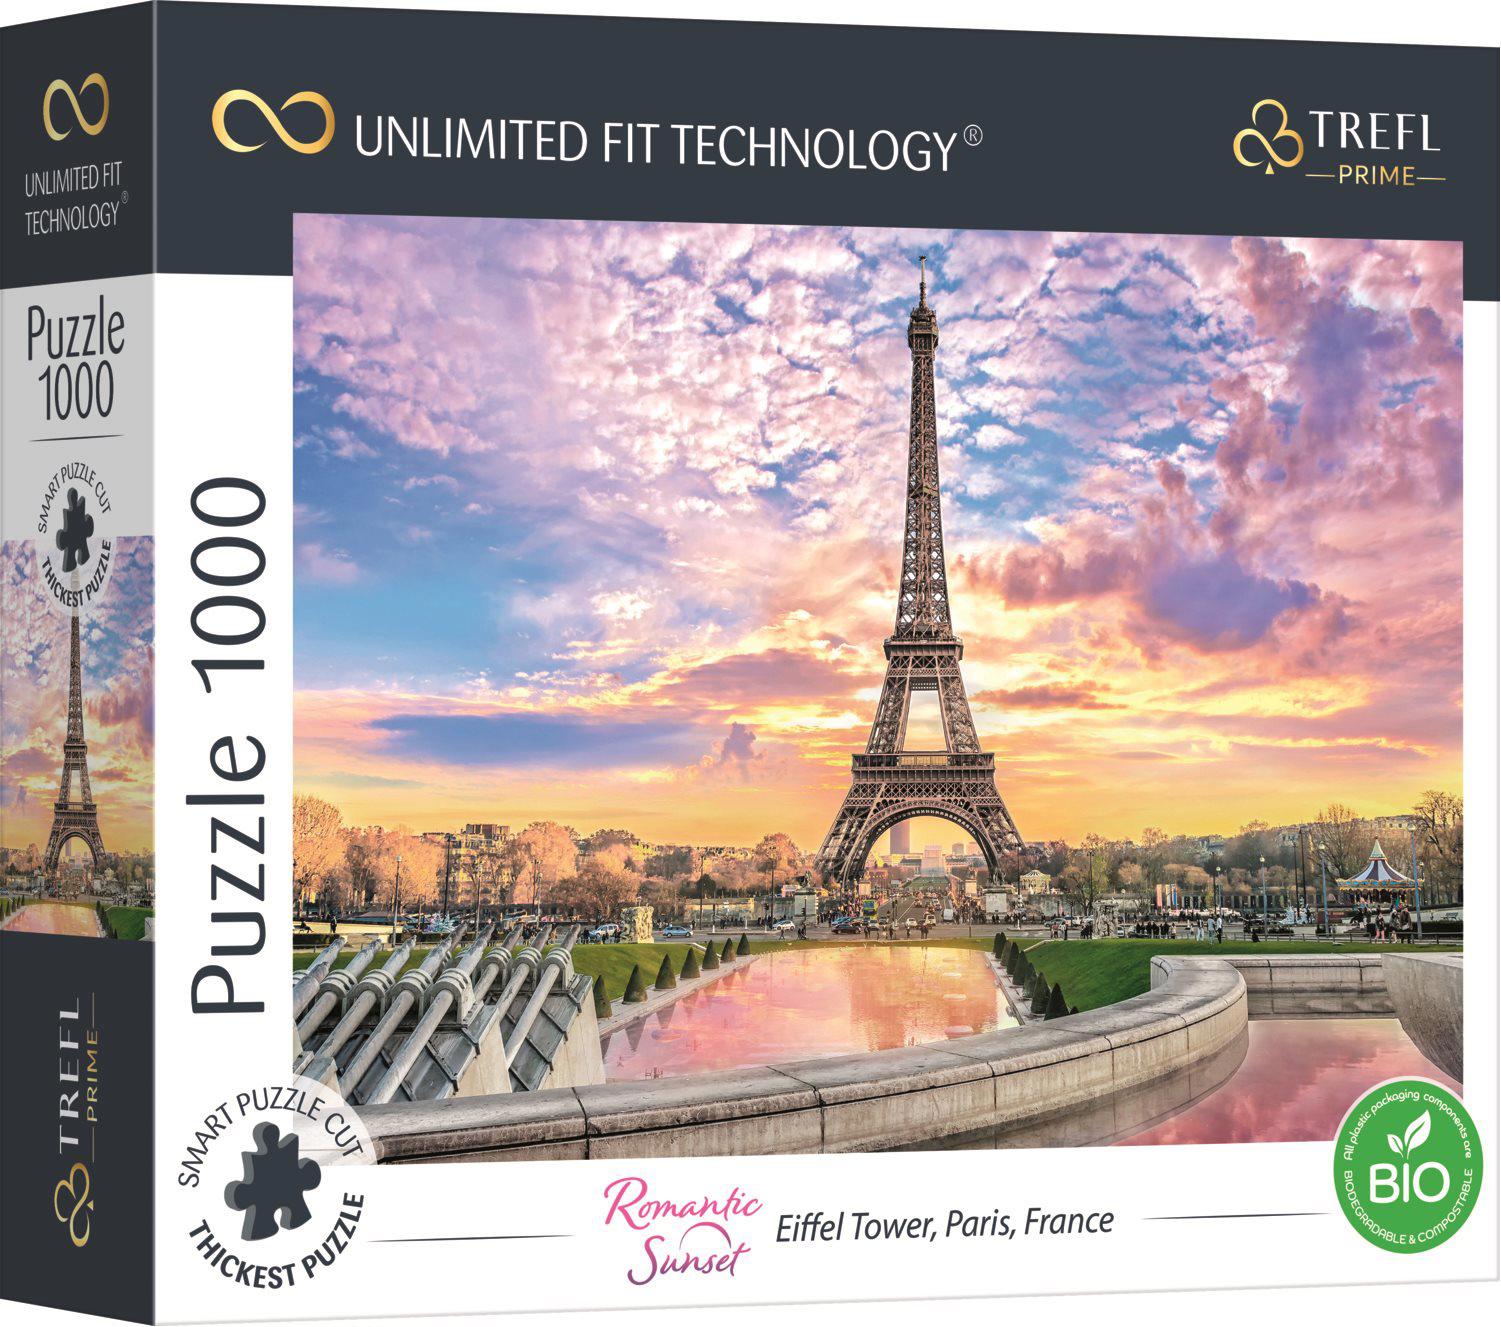 Puzzle Torre Eiffel, Parigi, Francia UFT